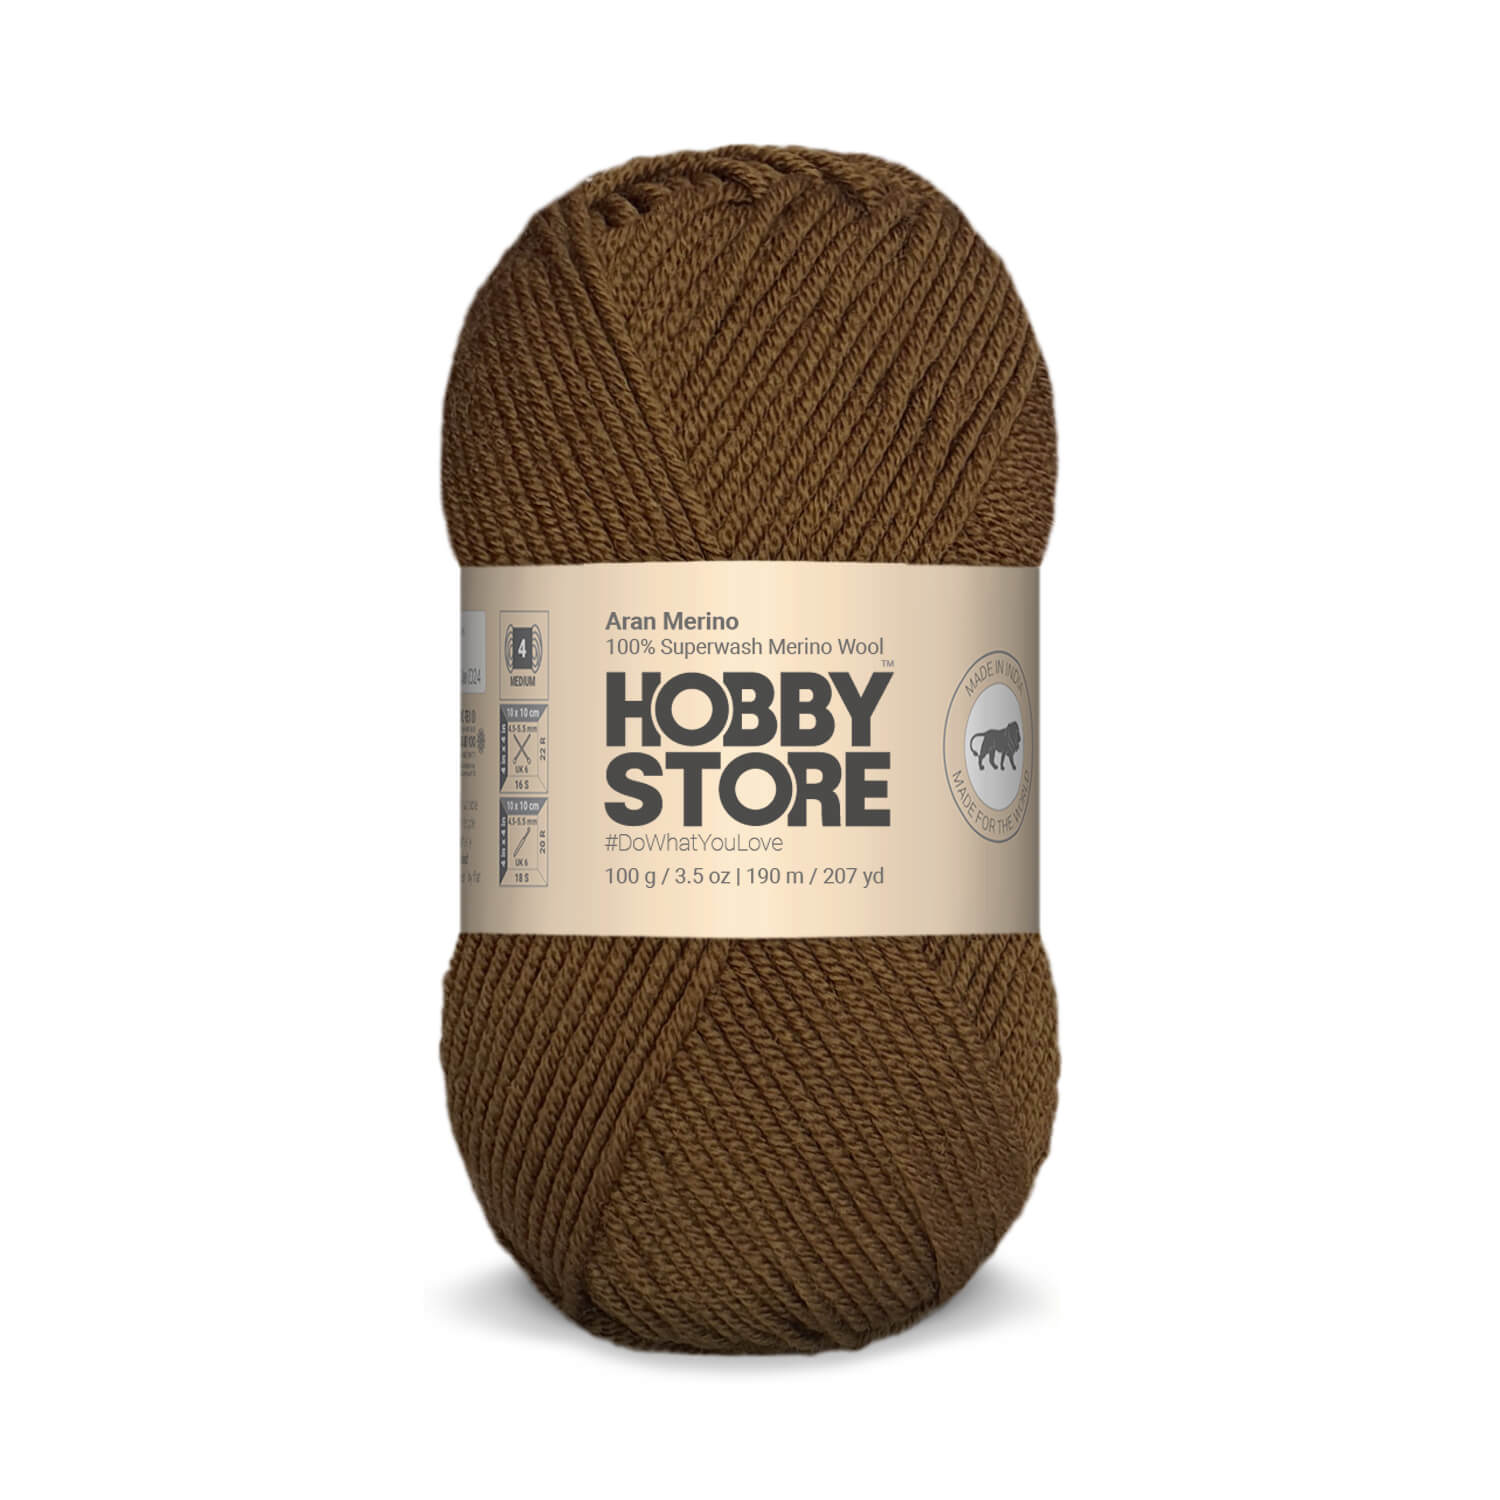 Aran Merino Wool by Hobby Store - Mud Brown AM002